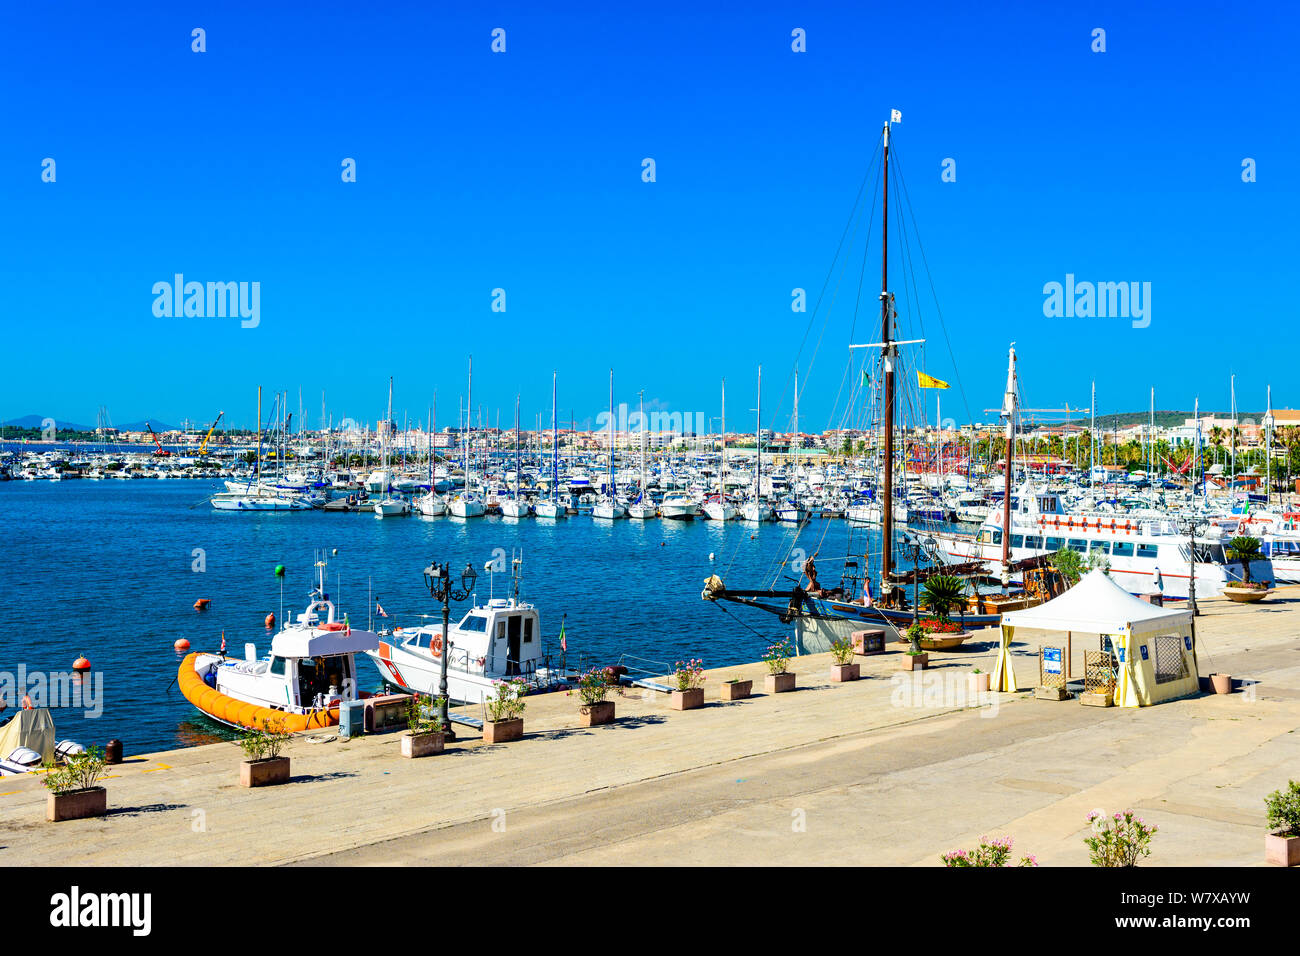 La porta marina con yacht, barche, barche a vela ad Alghero, Sardegna, Italia Foto Stock